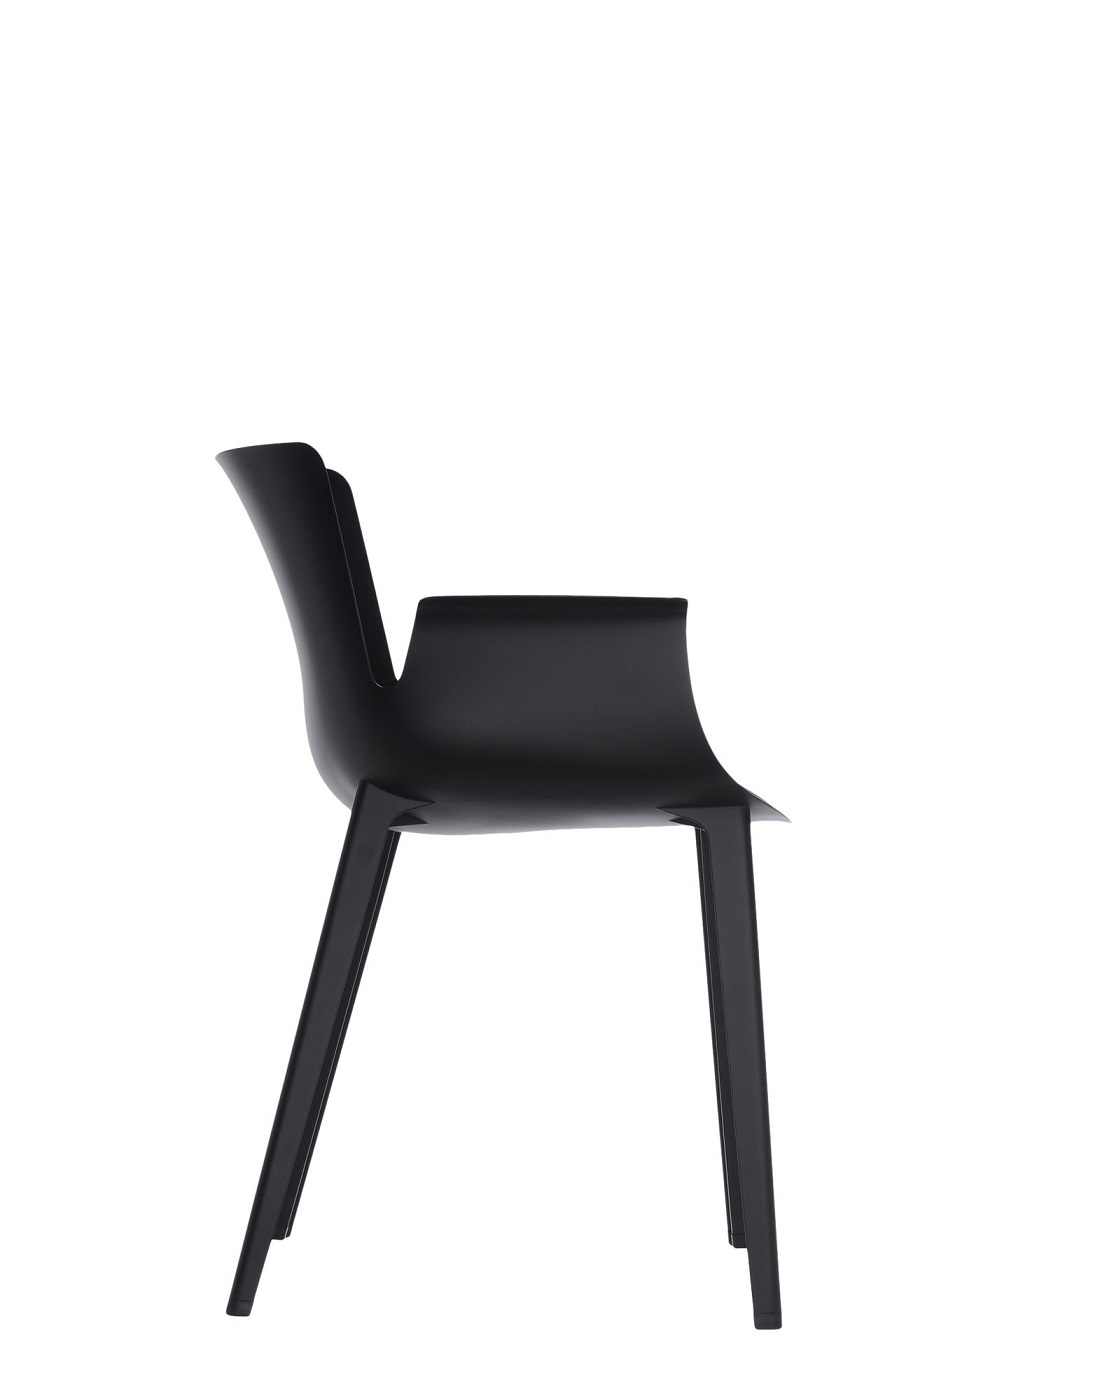 chair-piuma-philippe-starck-N09-side